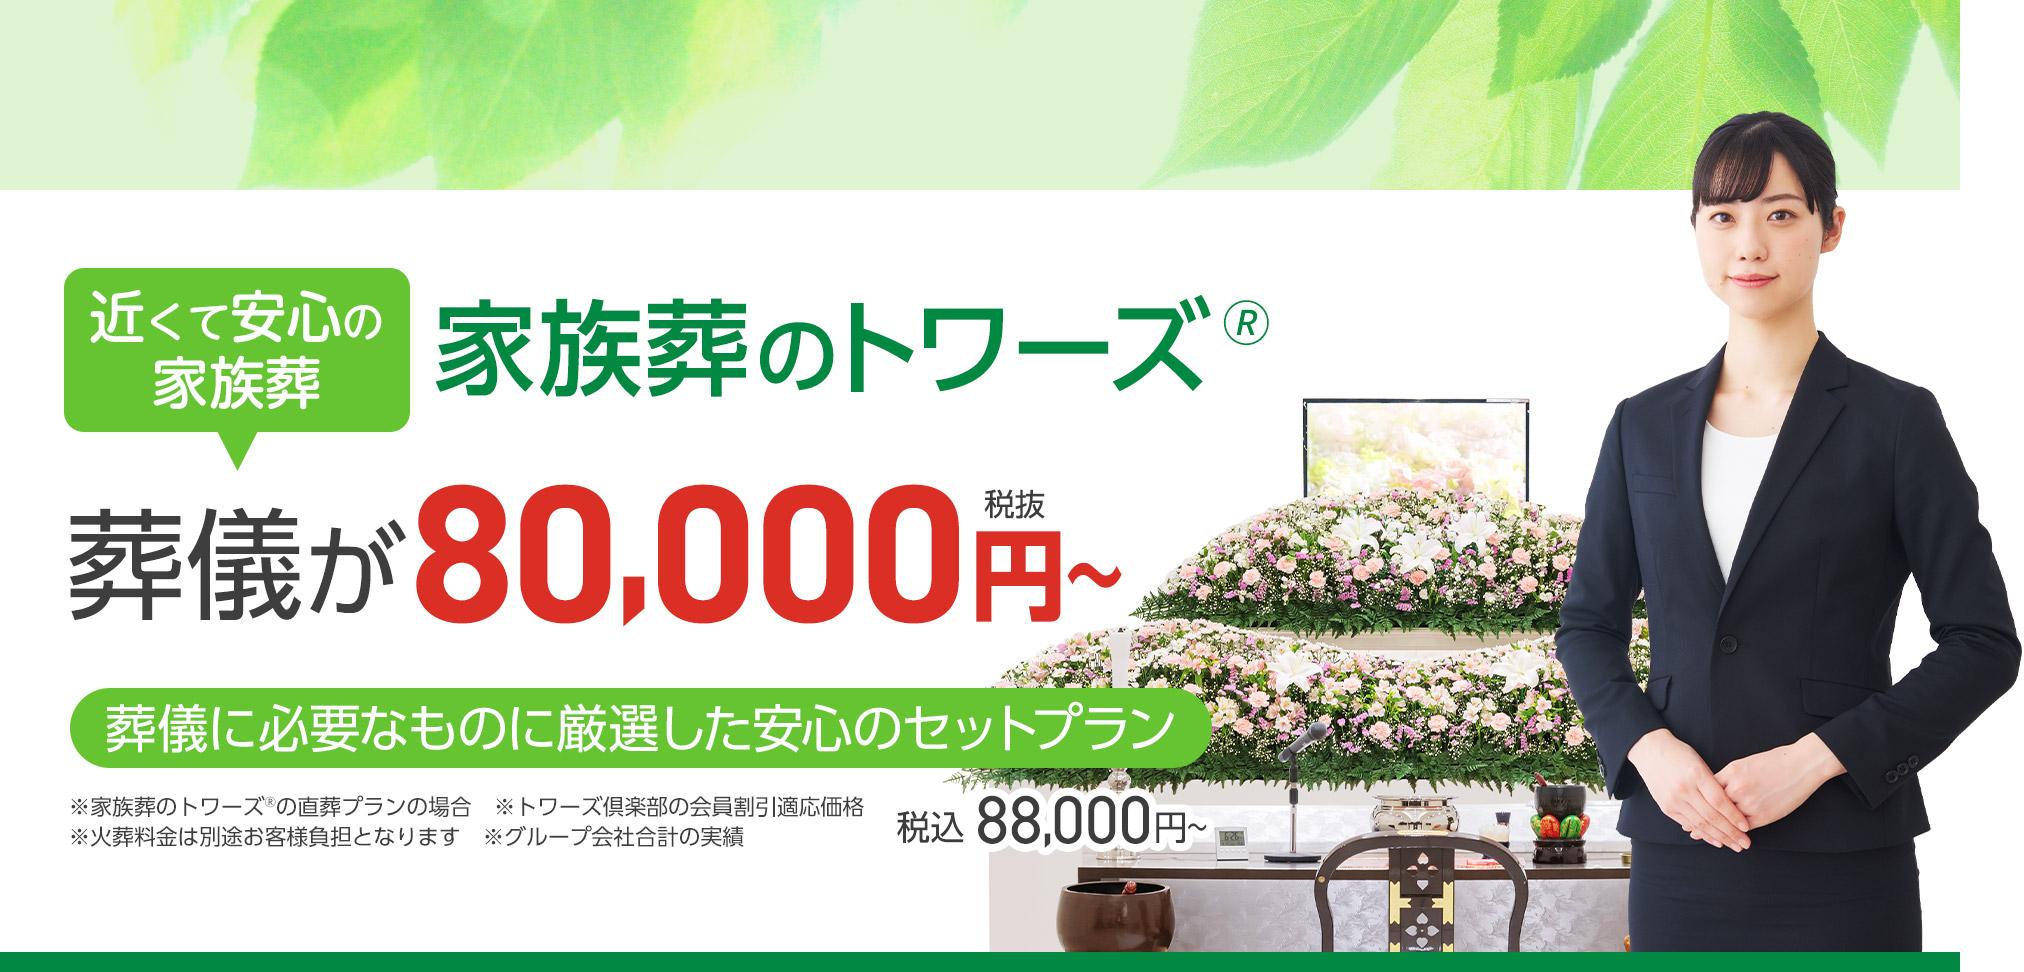 豊川市で葬儀・葬式・家族葬をお探しなら家族葬のトワーズ 近くて安心の葬儀・家族葬が税抜120,000円